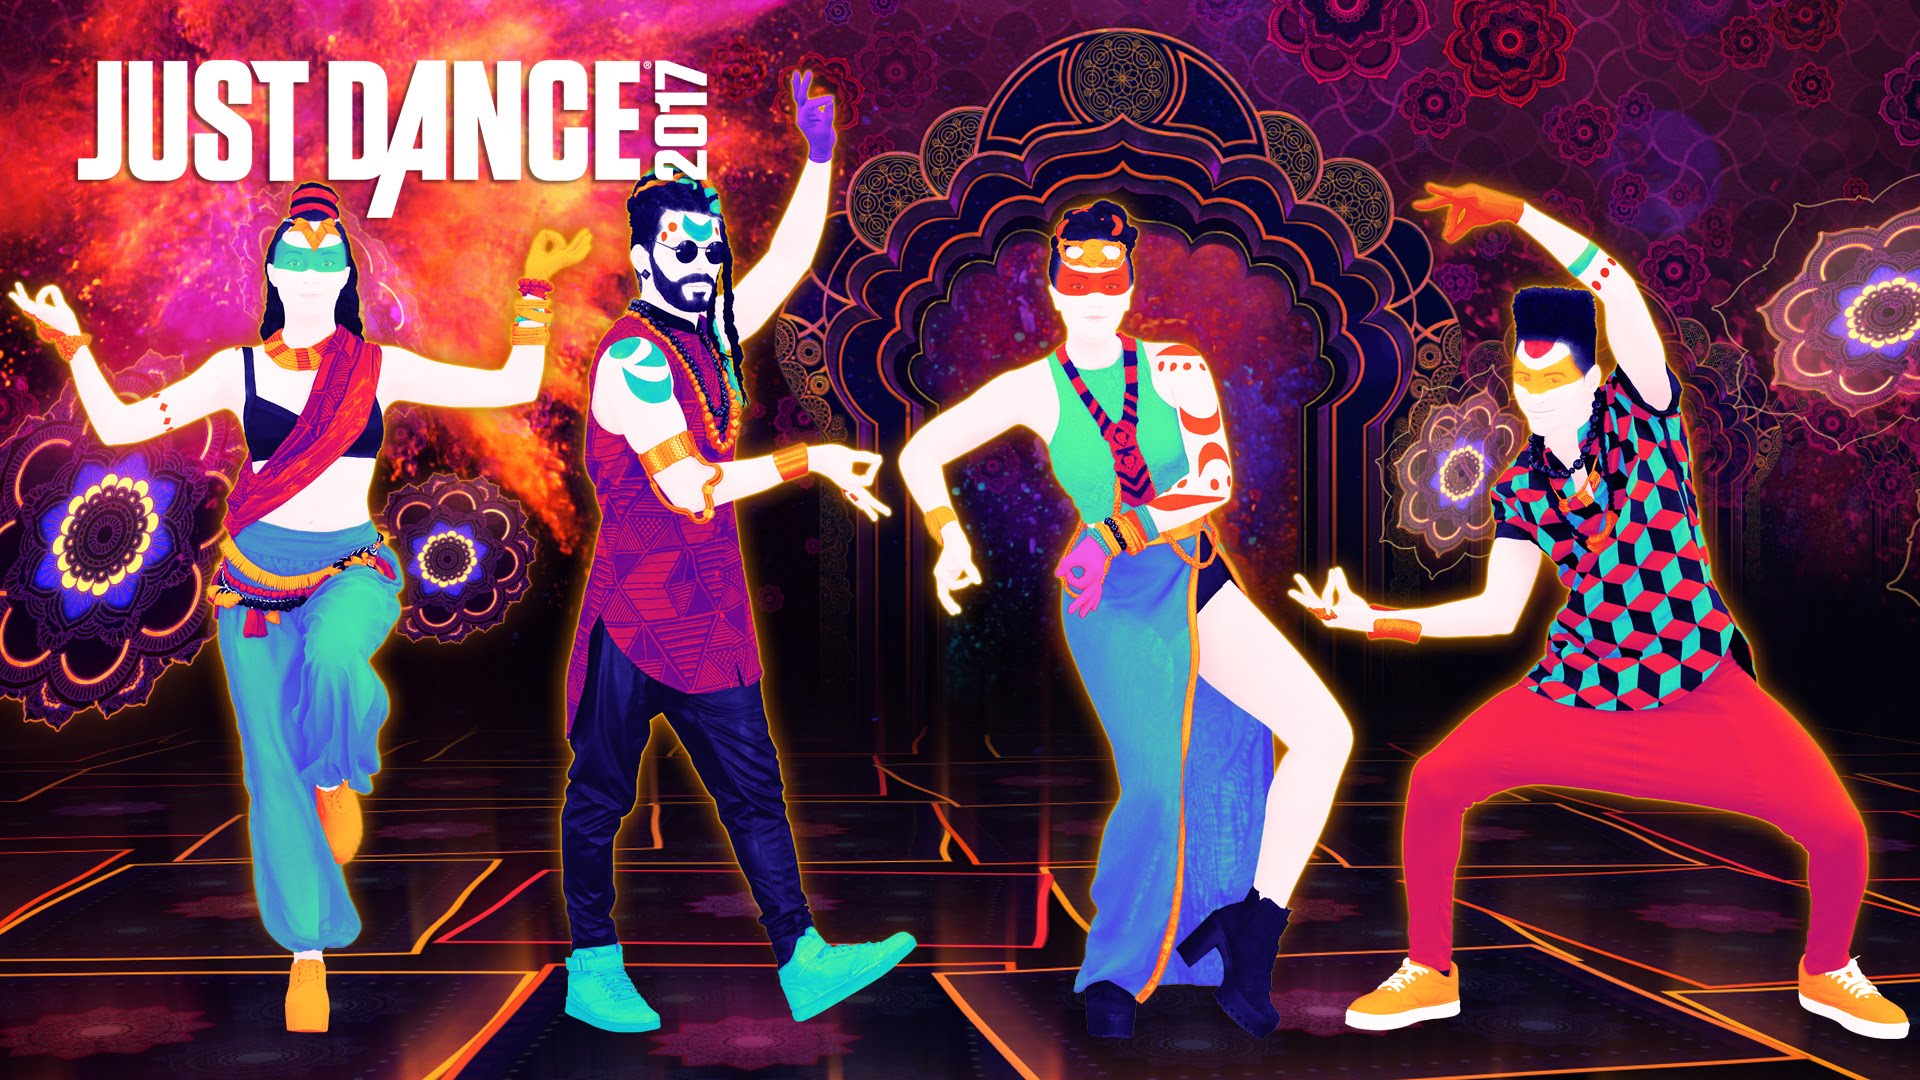 Just Dance Wallpaper - Just Dance 2014 , HD Wallpaper & Backgrounds